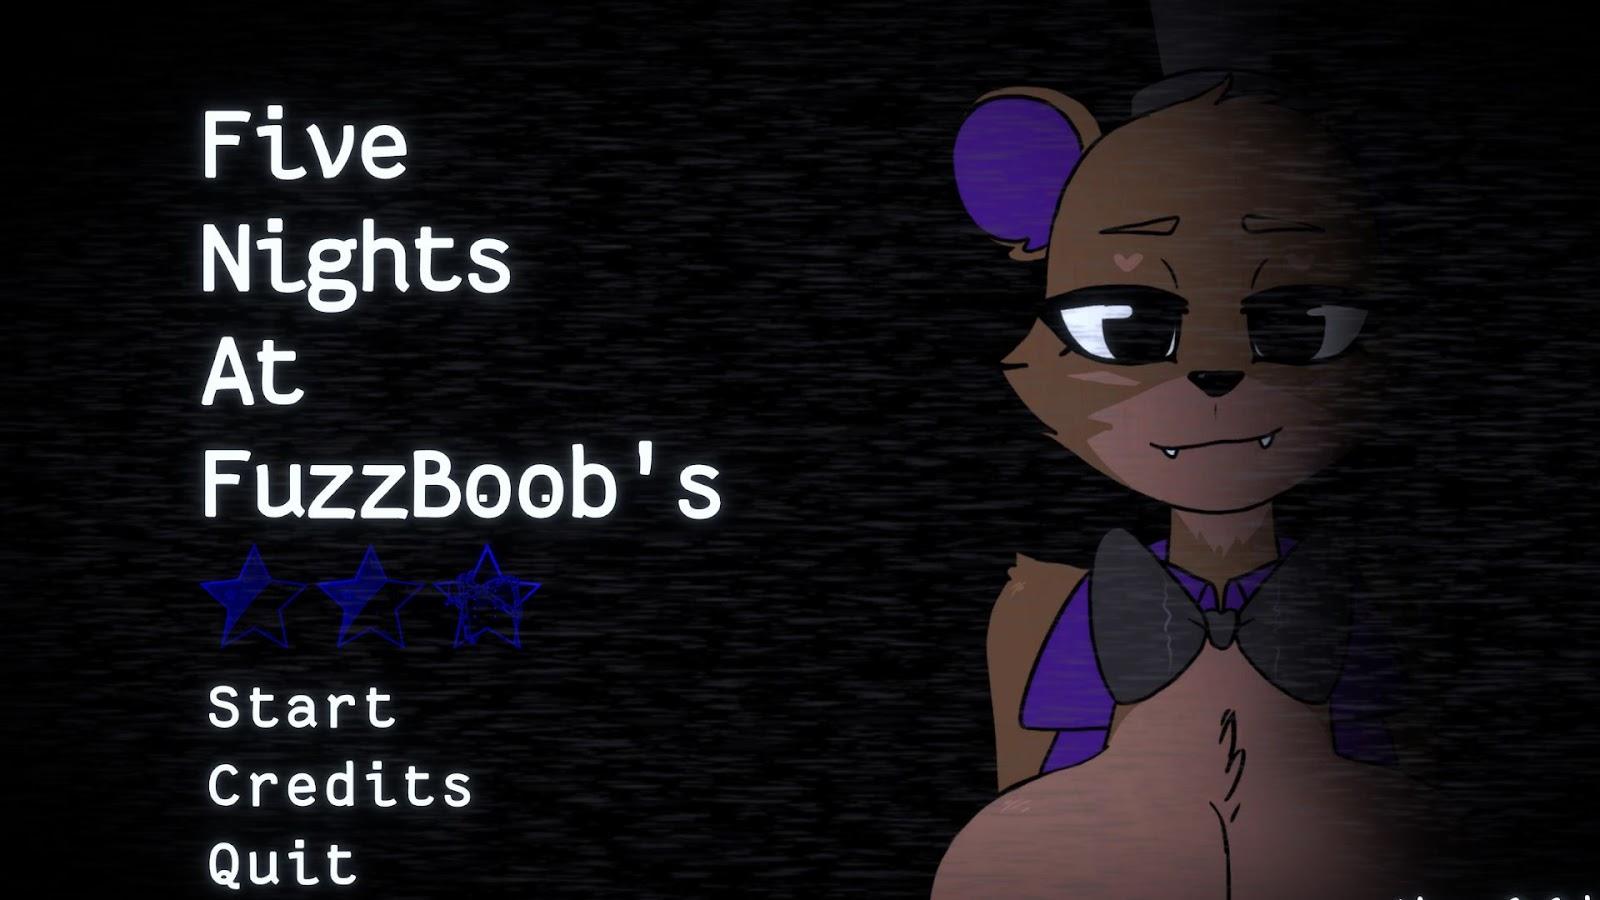 Five Nights at FuzzBoob's